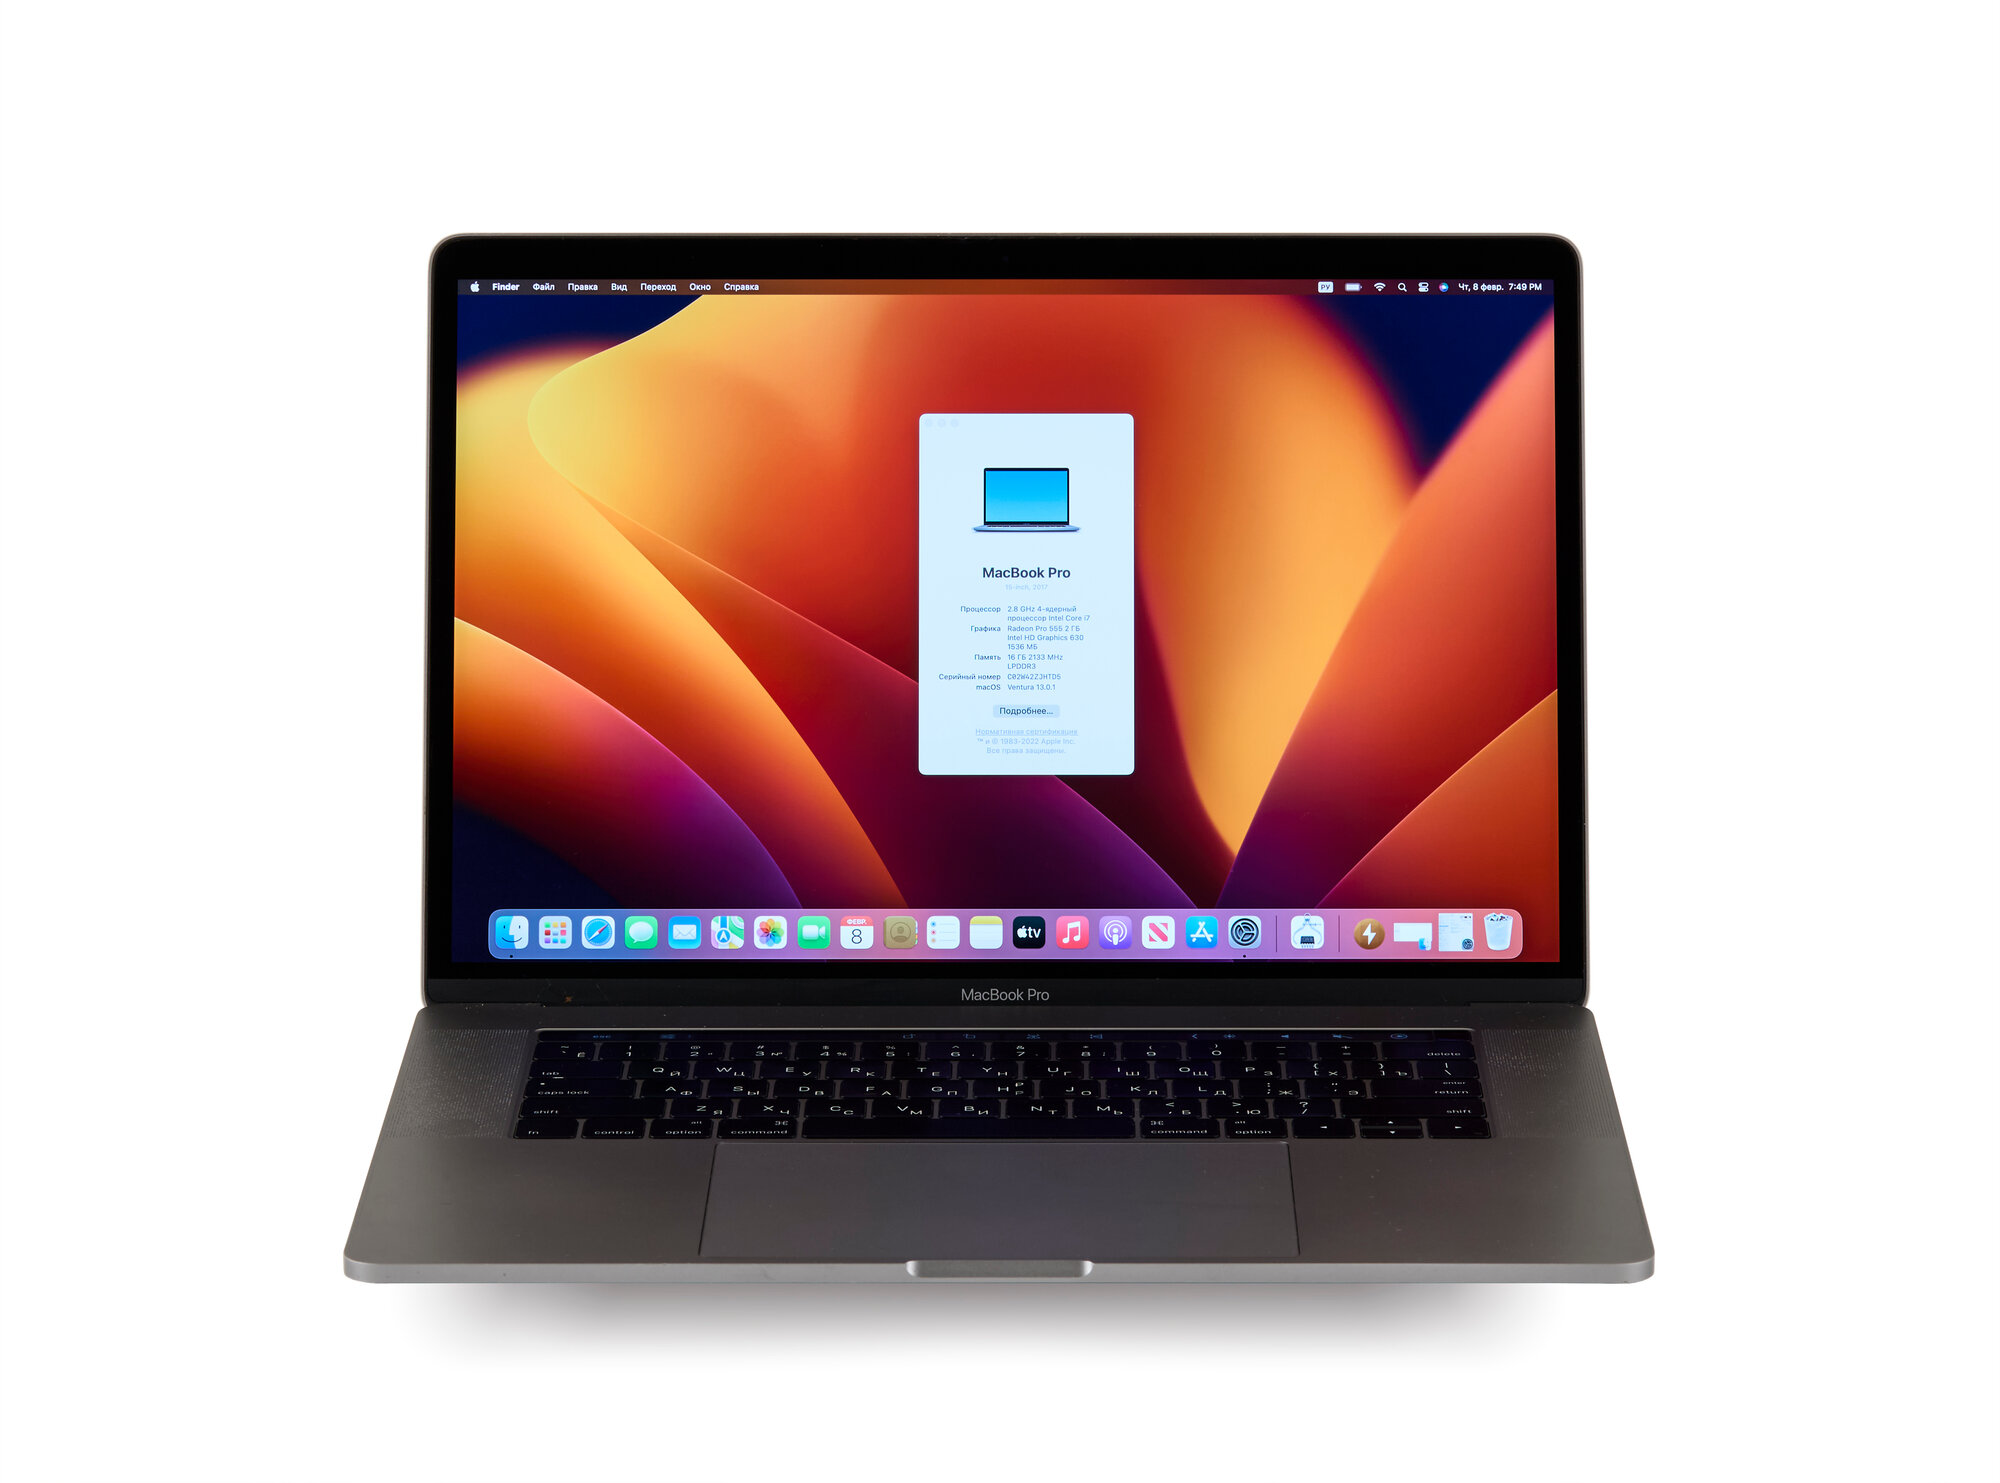 Ноутбук Apple Macbook Pro 15 Touch Bar Retina 2017 г A1707 (Производство 2018 г) Core i7 2.8Ггц 4 ядра / ОЗУ 16Гб / Объем SSD 250Gb / AMD Radeon Pro 555 2Гб / Gray